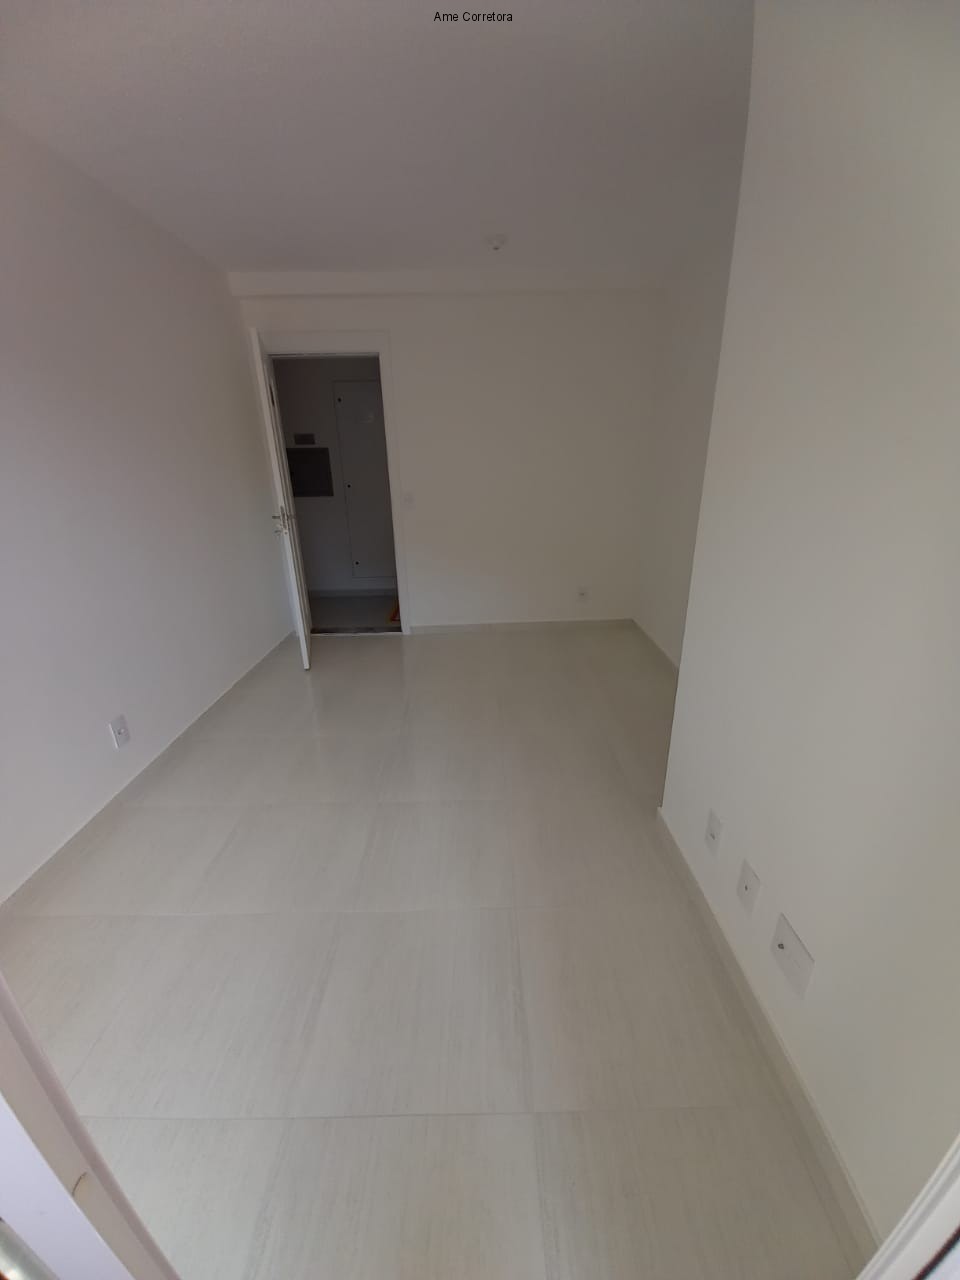 FOTO 04 - Apartamento 2 quartos à venda Rio de Janeiro,RJ - R$ 270.000 - AP00389 - 5